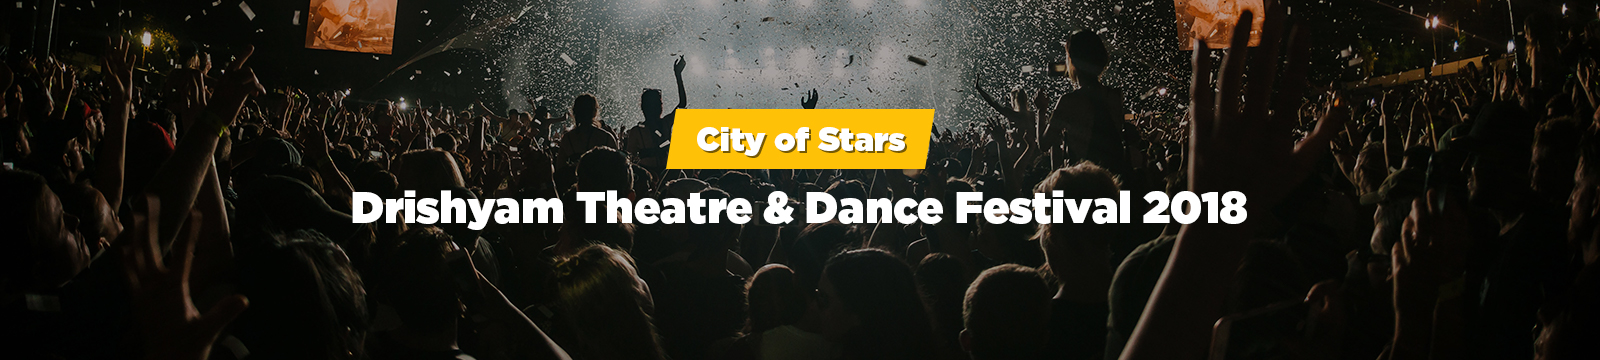 City of Stars – Drishyam Theatre & Dance Festival 2018